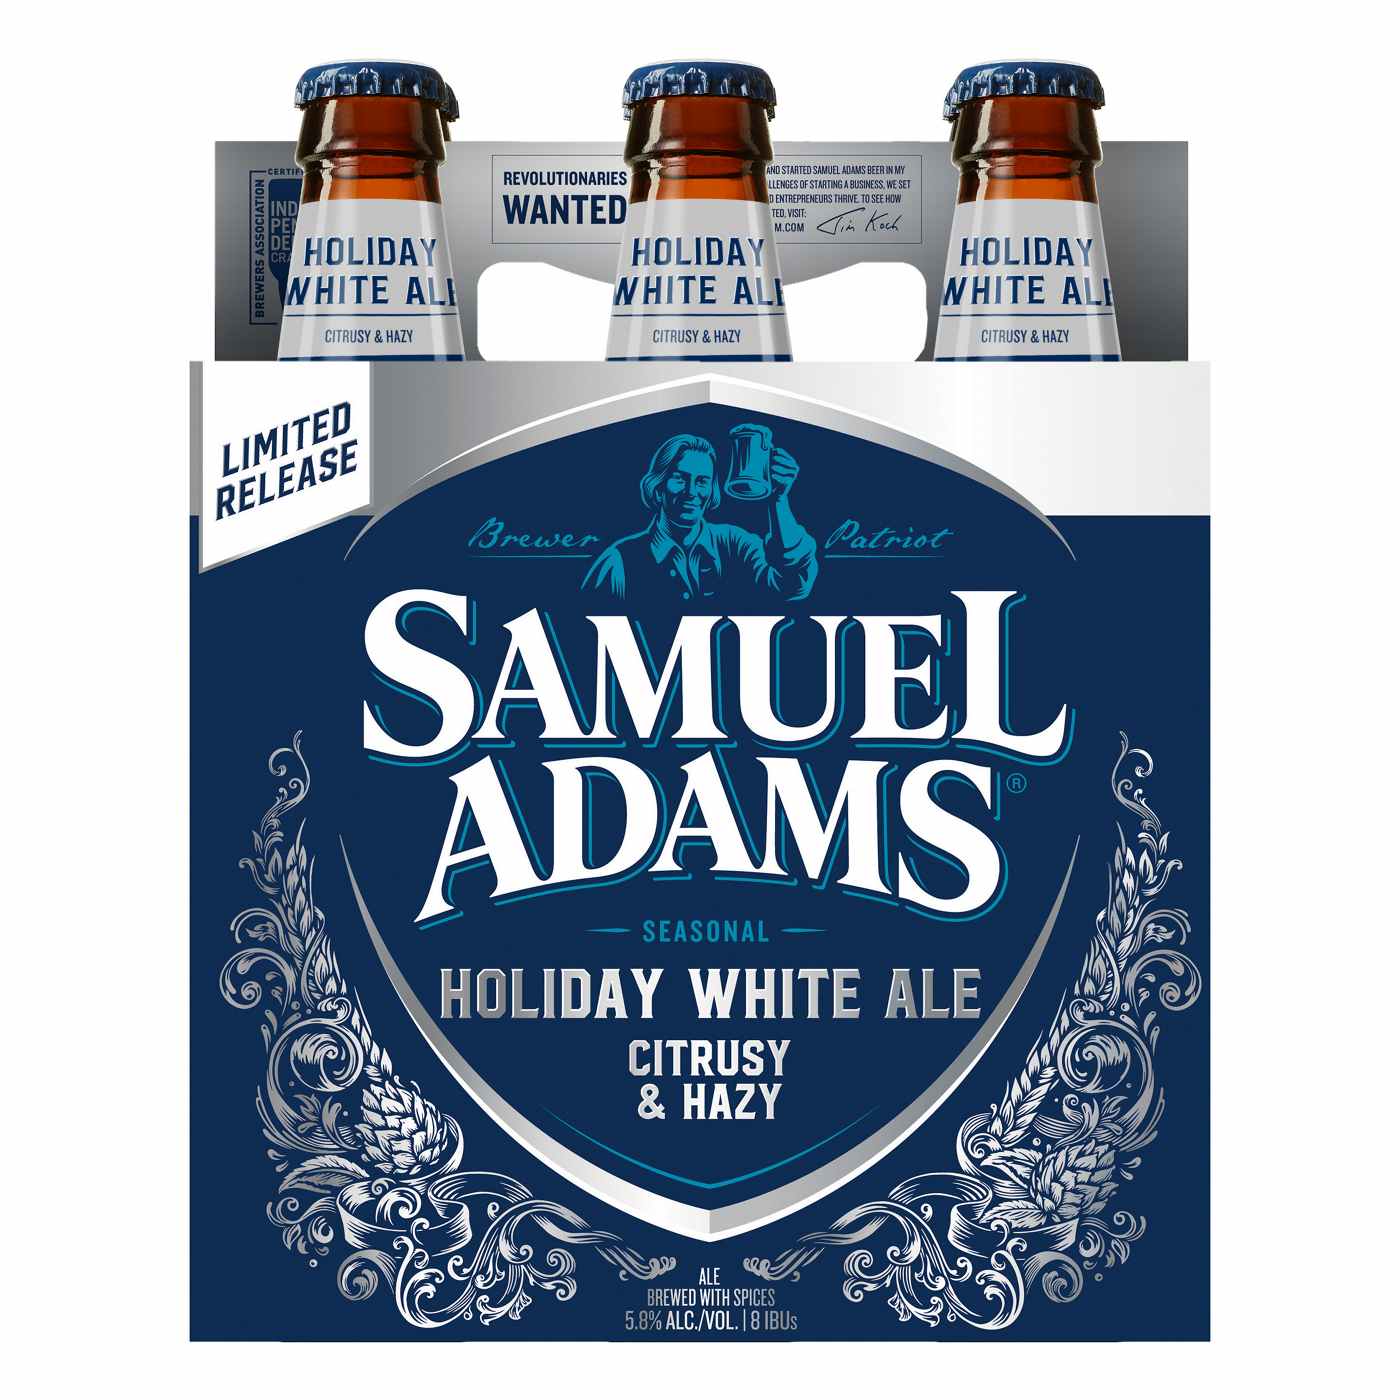 Samuel Adams Holiday White Ale Seasonal Beer 6 Pk Bottles; image 1 of 3